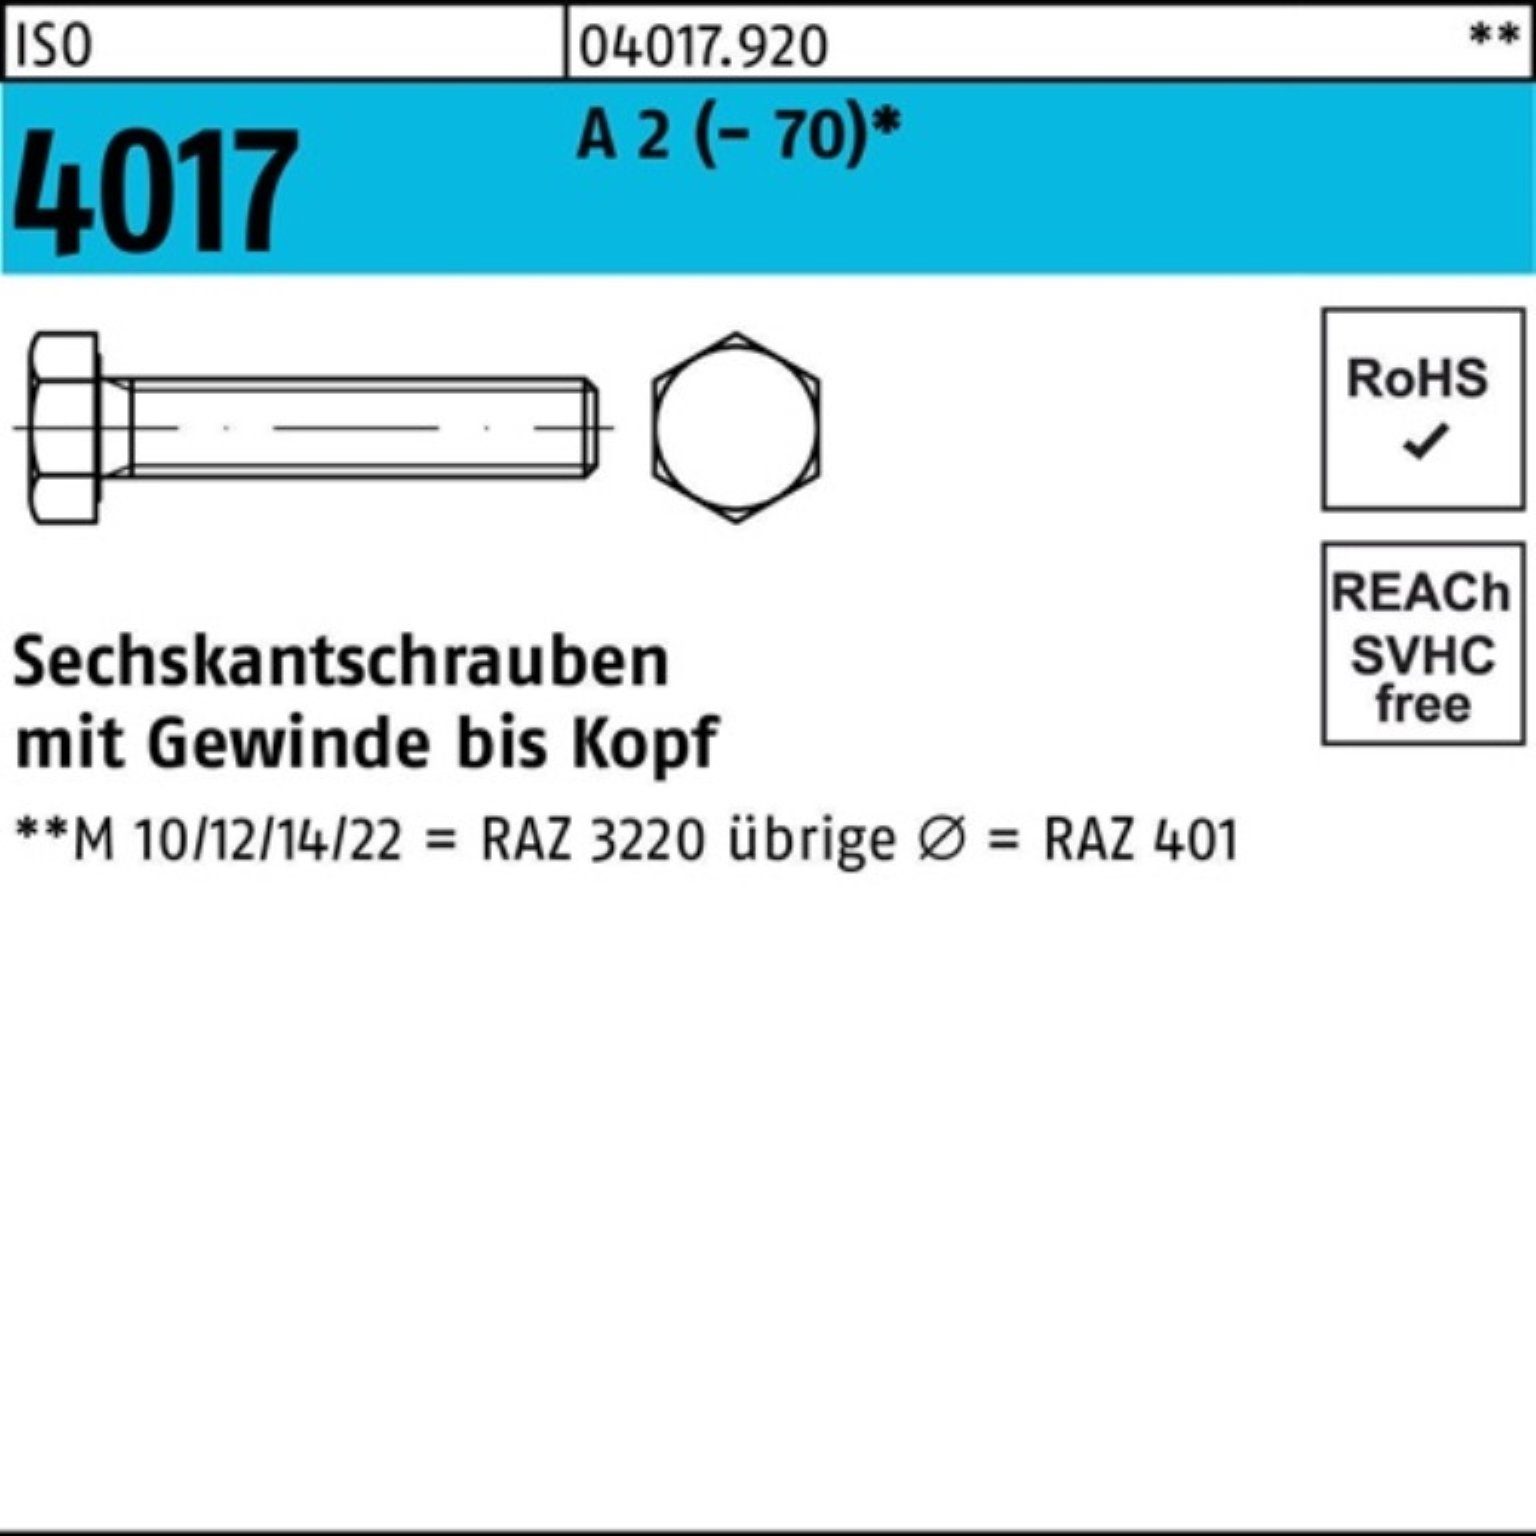 Bufab Sechskantschraube 100er Pack Sechskantschraube ISO 4017 VG M24x 160 A 2 (70) 1 Stück